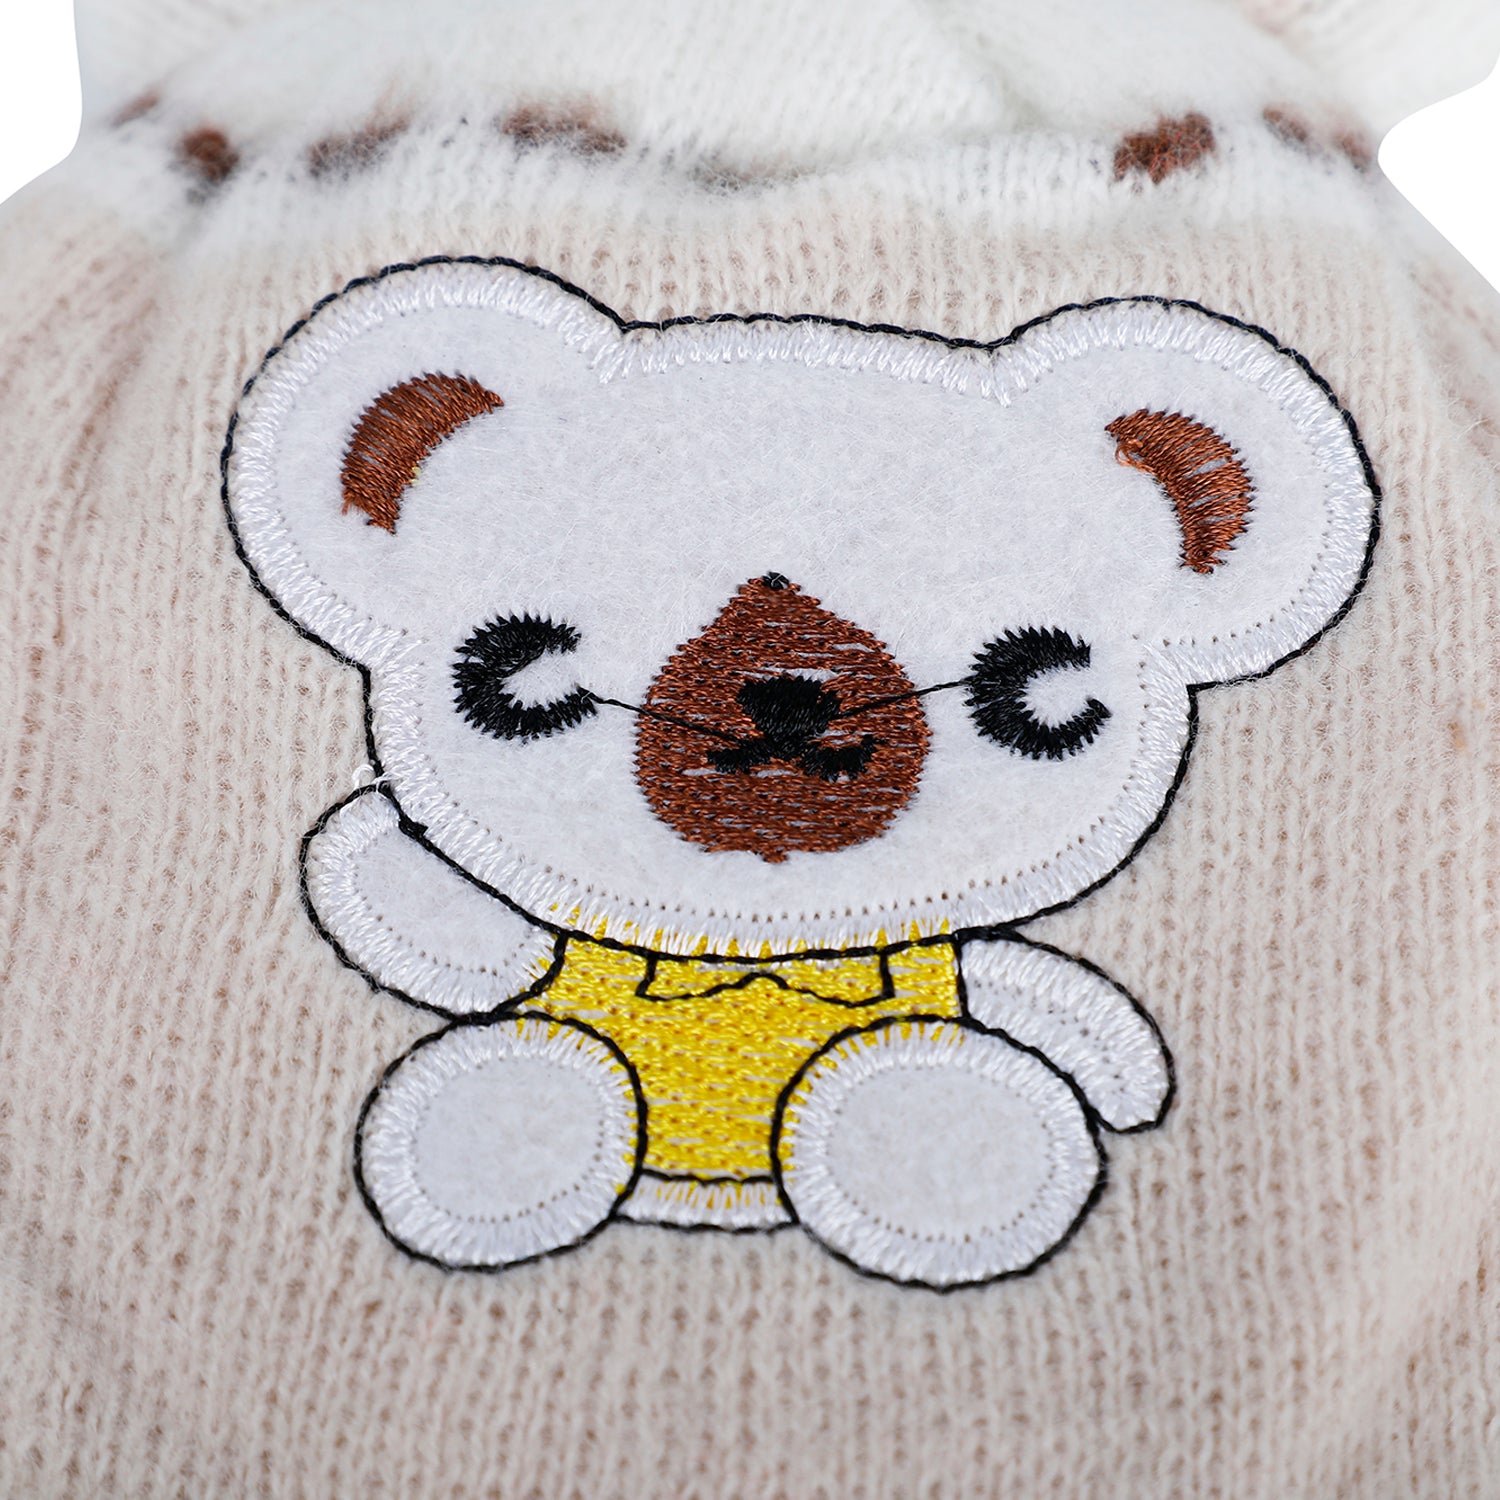 Baby Moo Koala Breathable Beanie Warm Knitted Woollen Cap - Beige